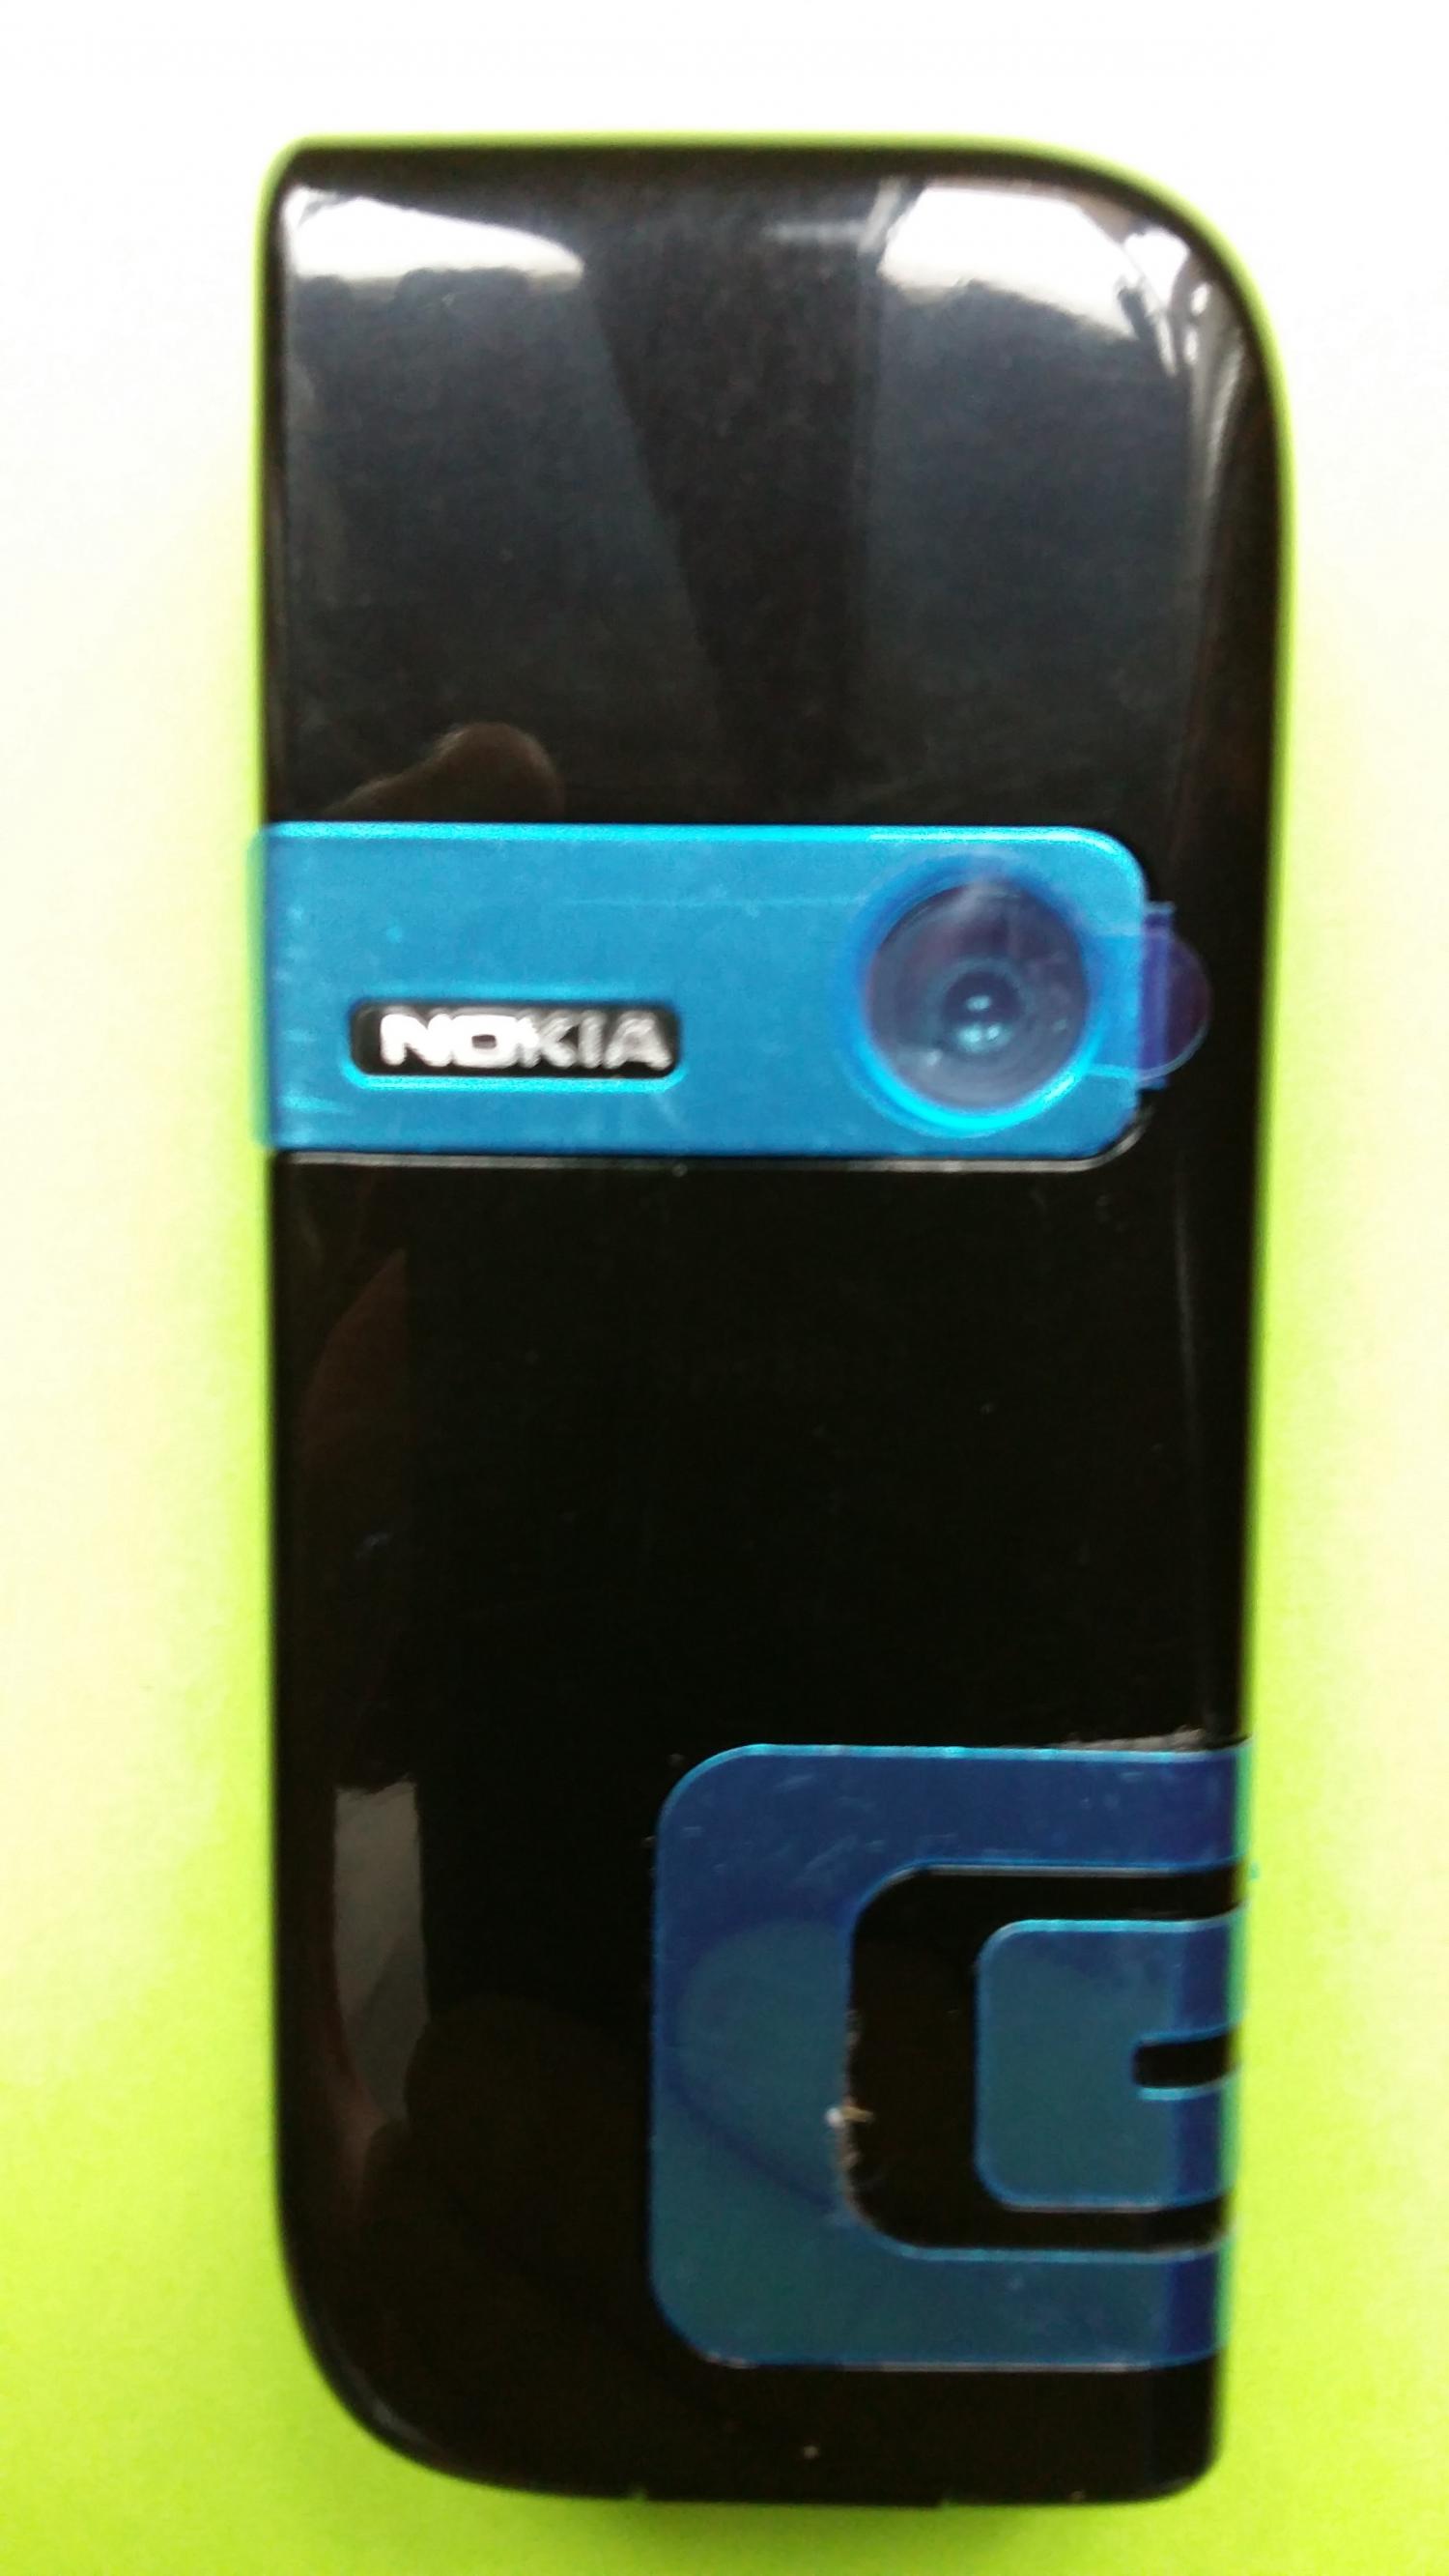 image-7307356-Nokia 7260 (1)2.jpg